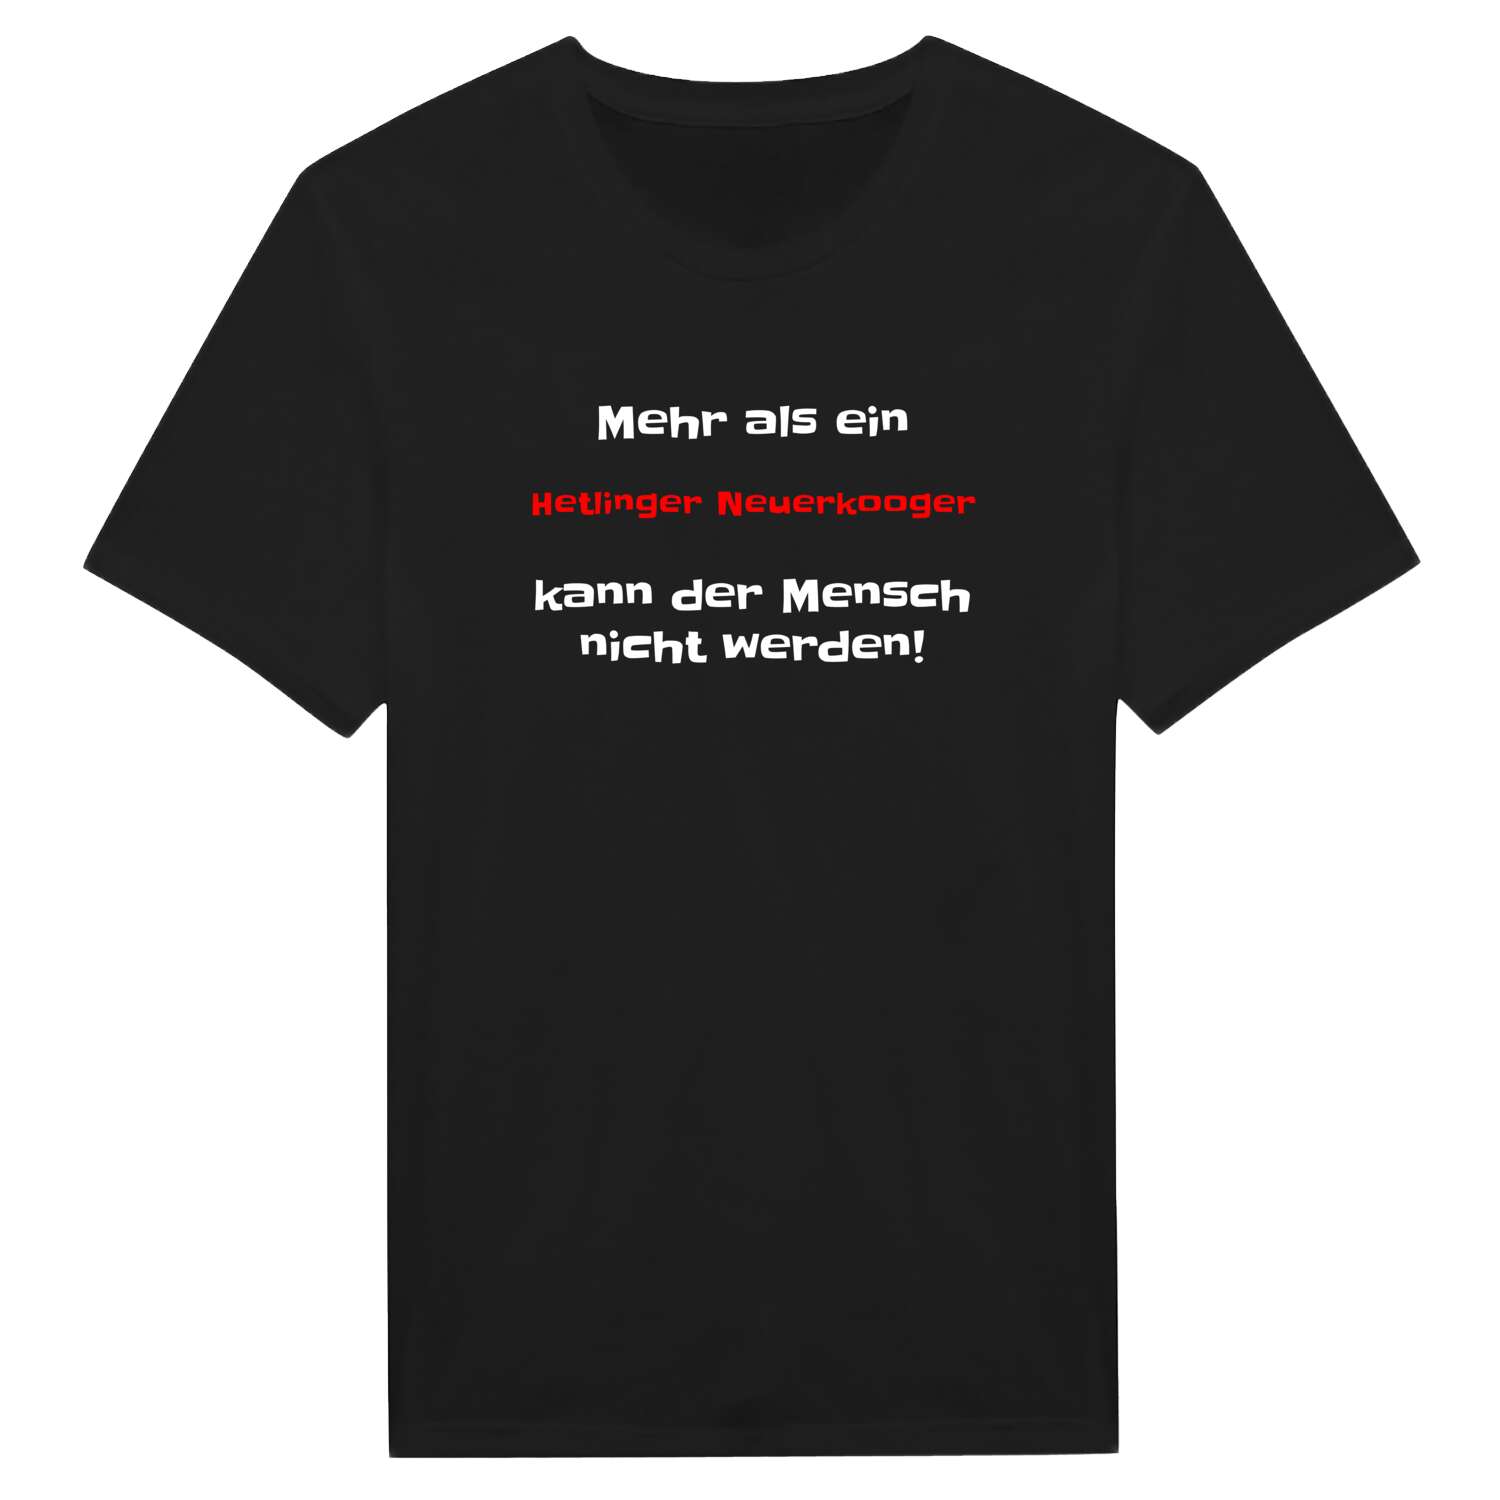 Hetlinger Neuerkoog T-Shirt »Mehr als ein«